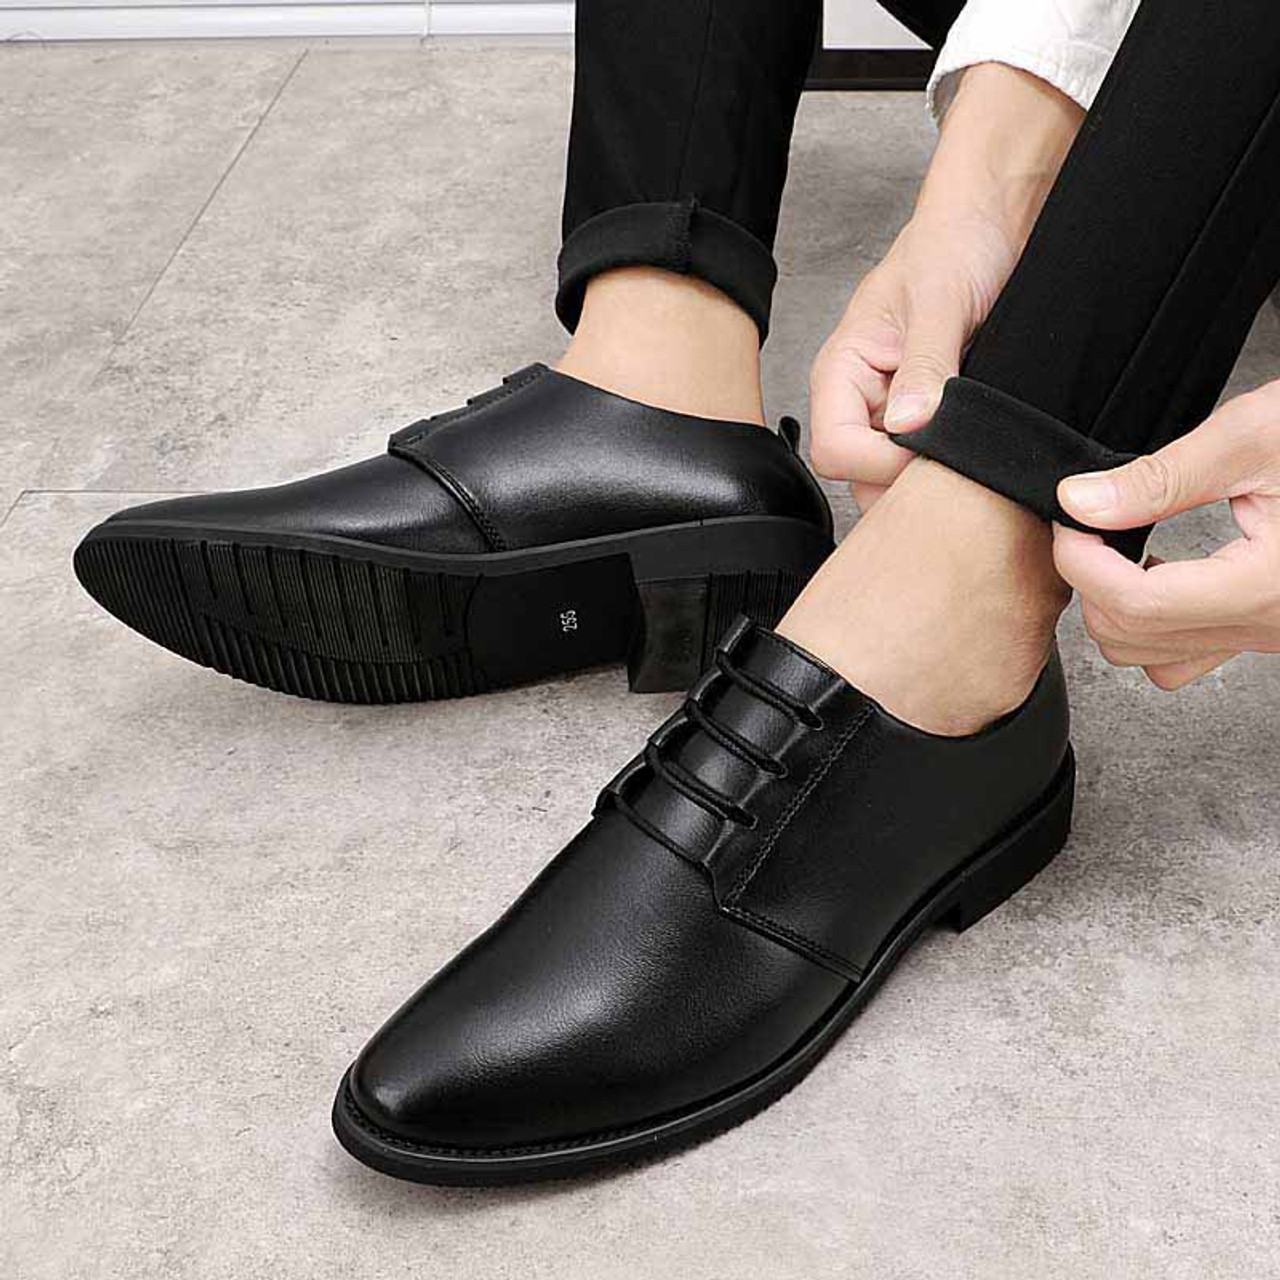 Black simple plain urban leather dress shoe | Mens dress shoes online ...